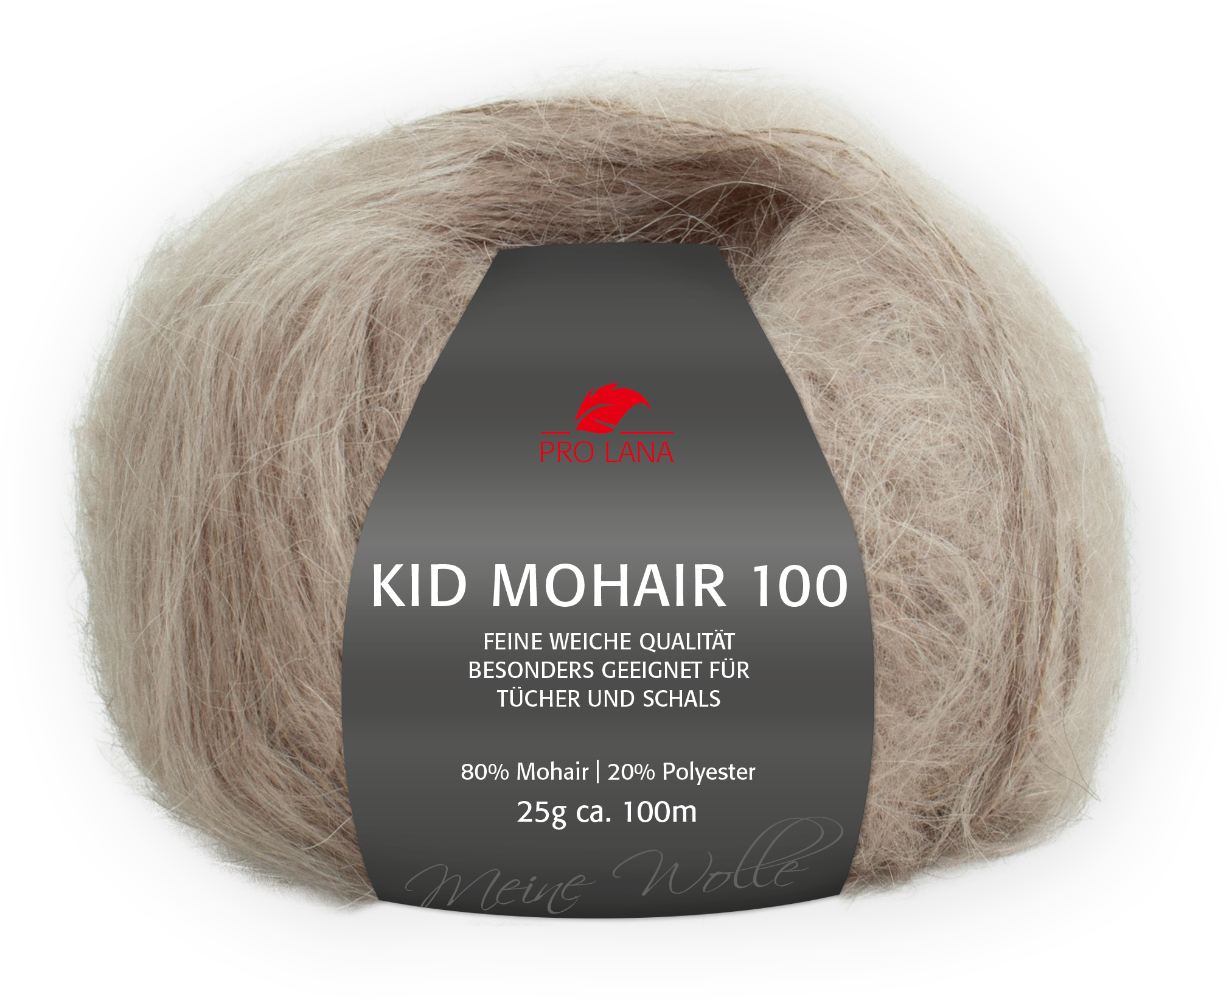 Kid Mohair 100 von Pro Lana 0010 - beige / grau